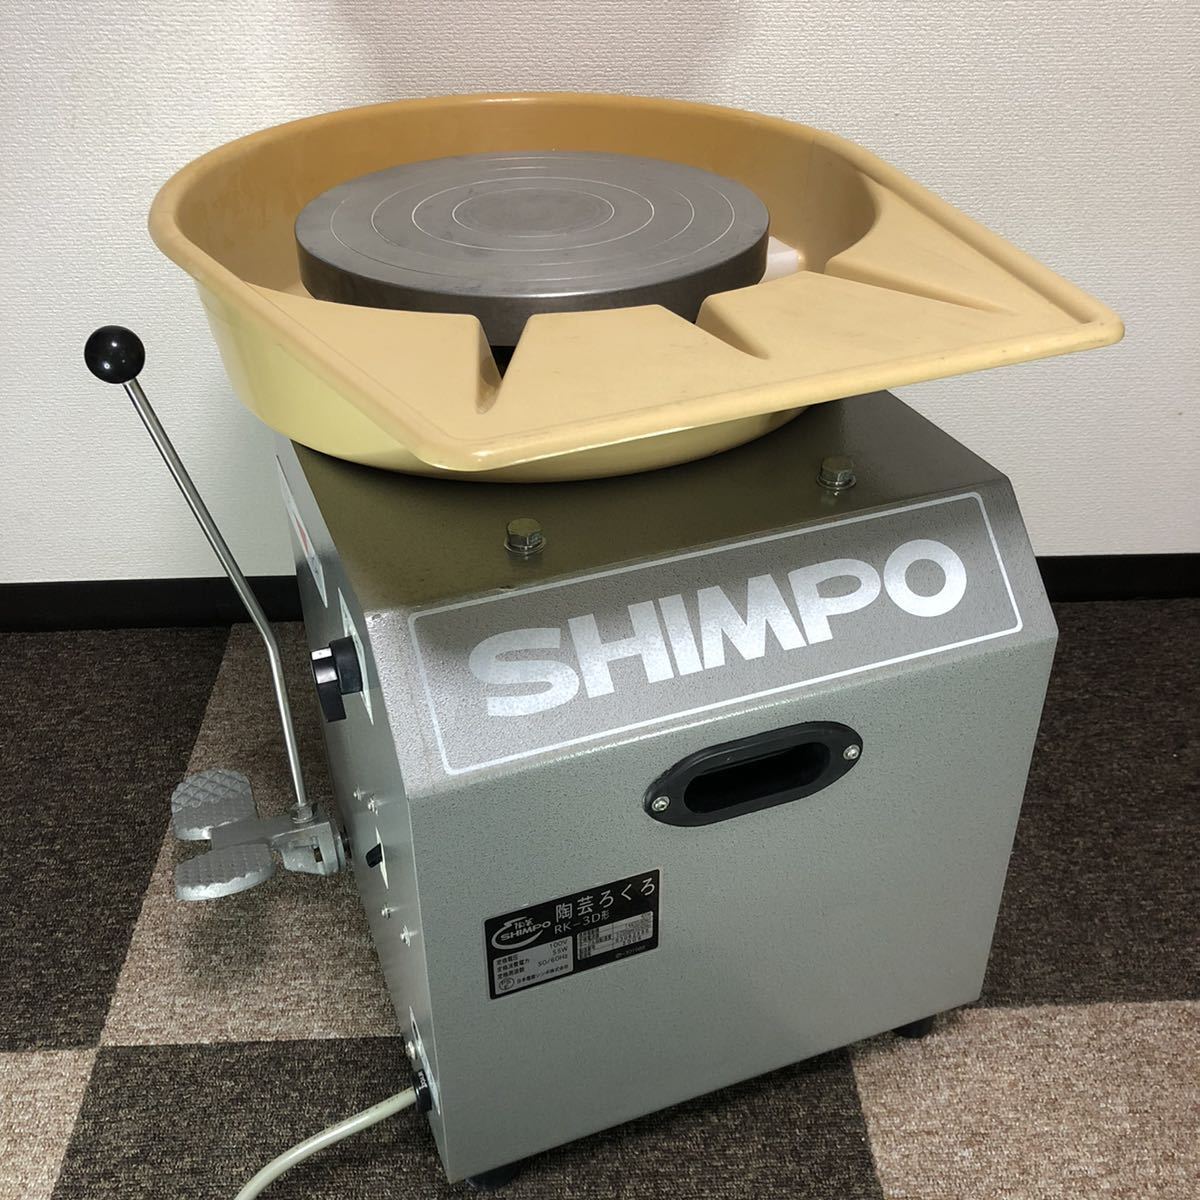 シンポ RK-3D 電動ロクロ 日本電産シンポ株式会社 SHIMPO 陶芸ロクロ-